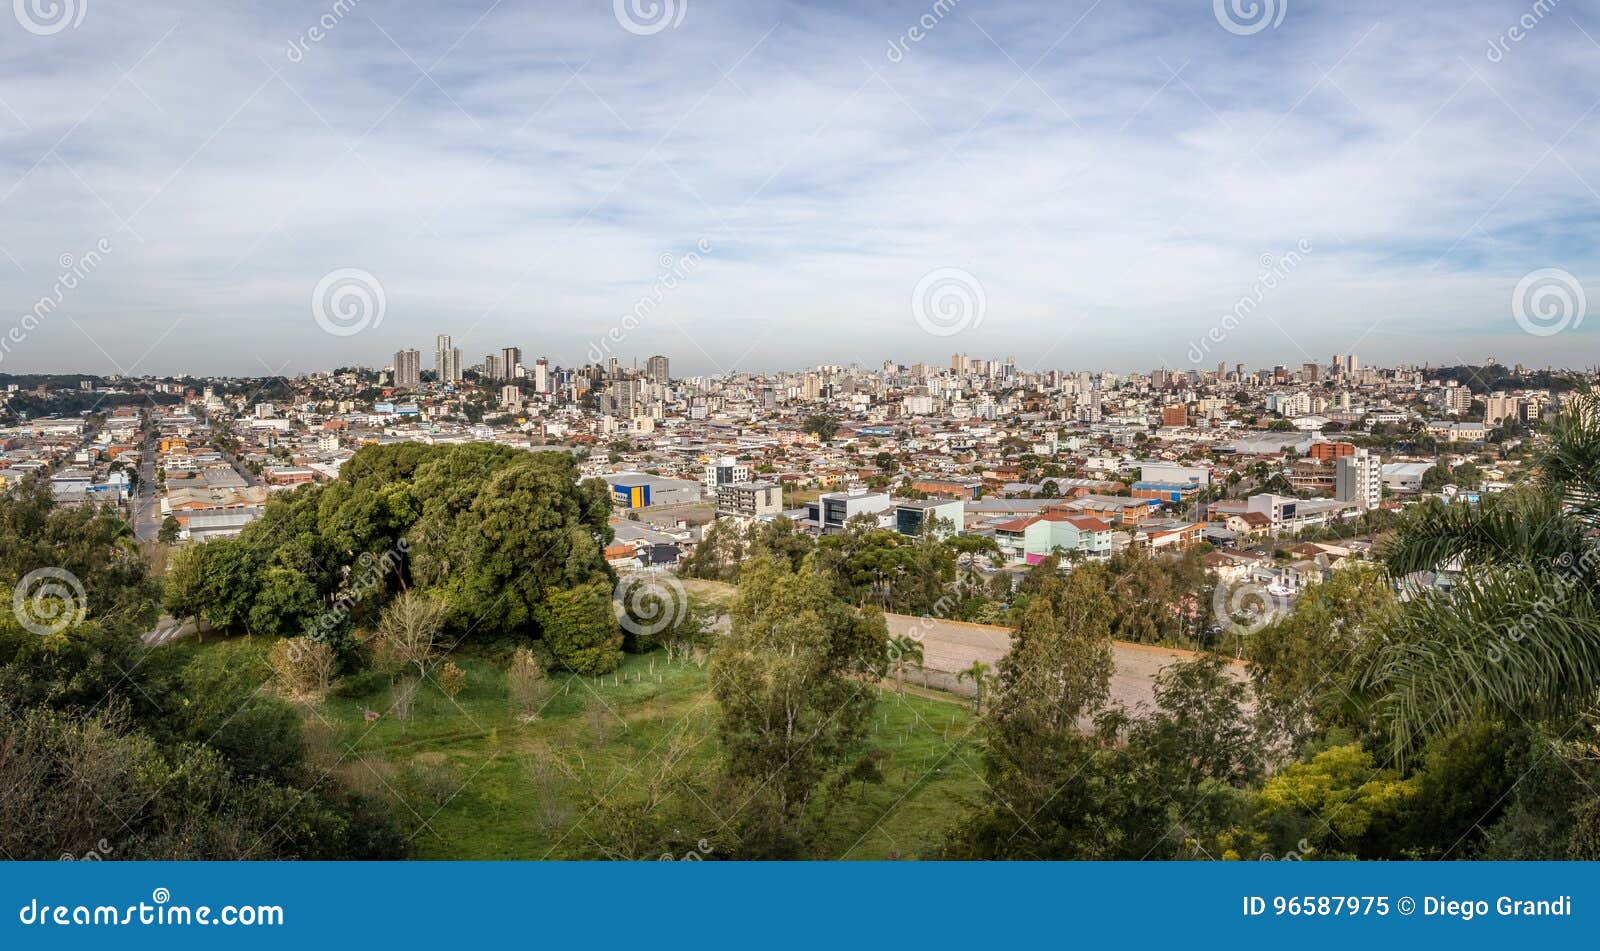 panoramic aerial view of caxias do sul city - caxias do sul, rio grande do sul, brazil